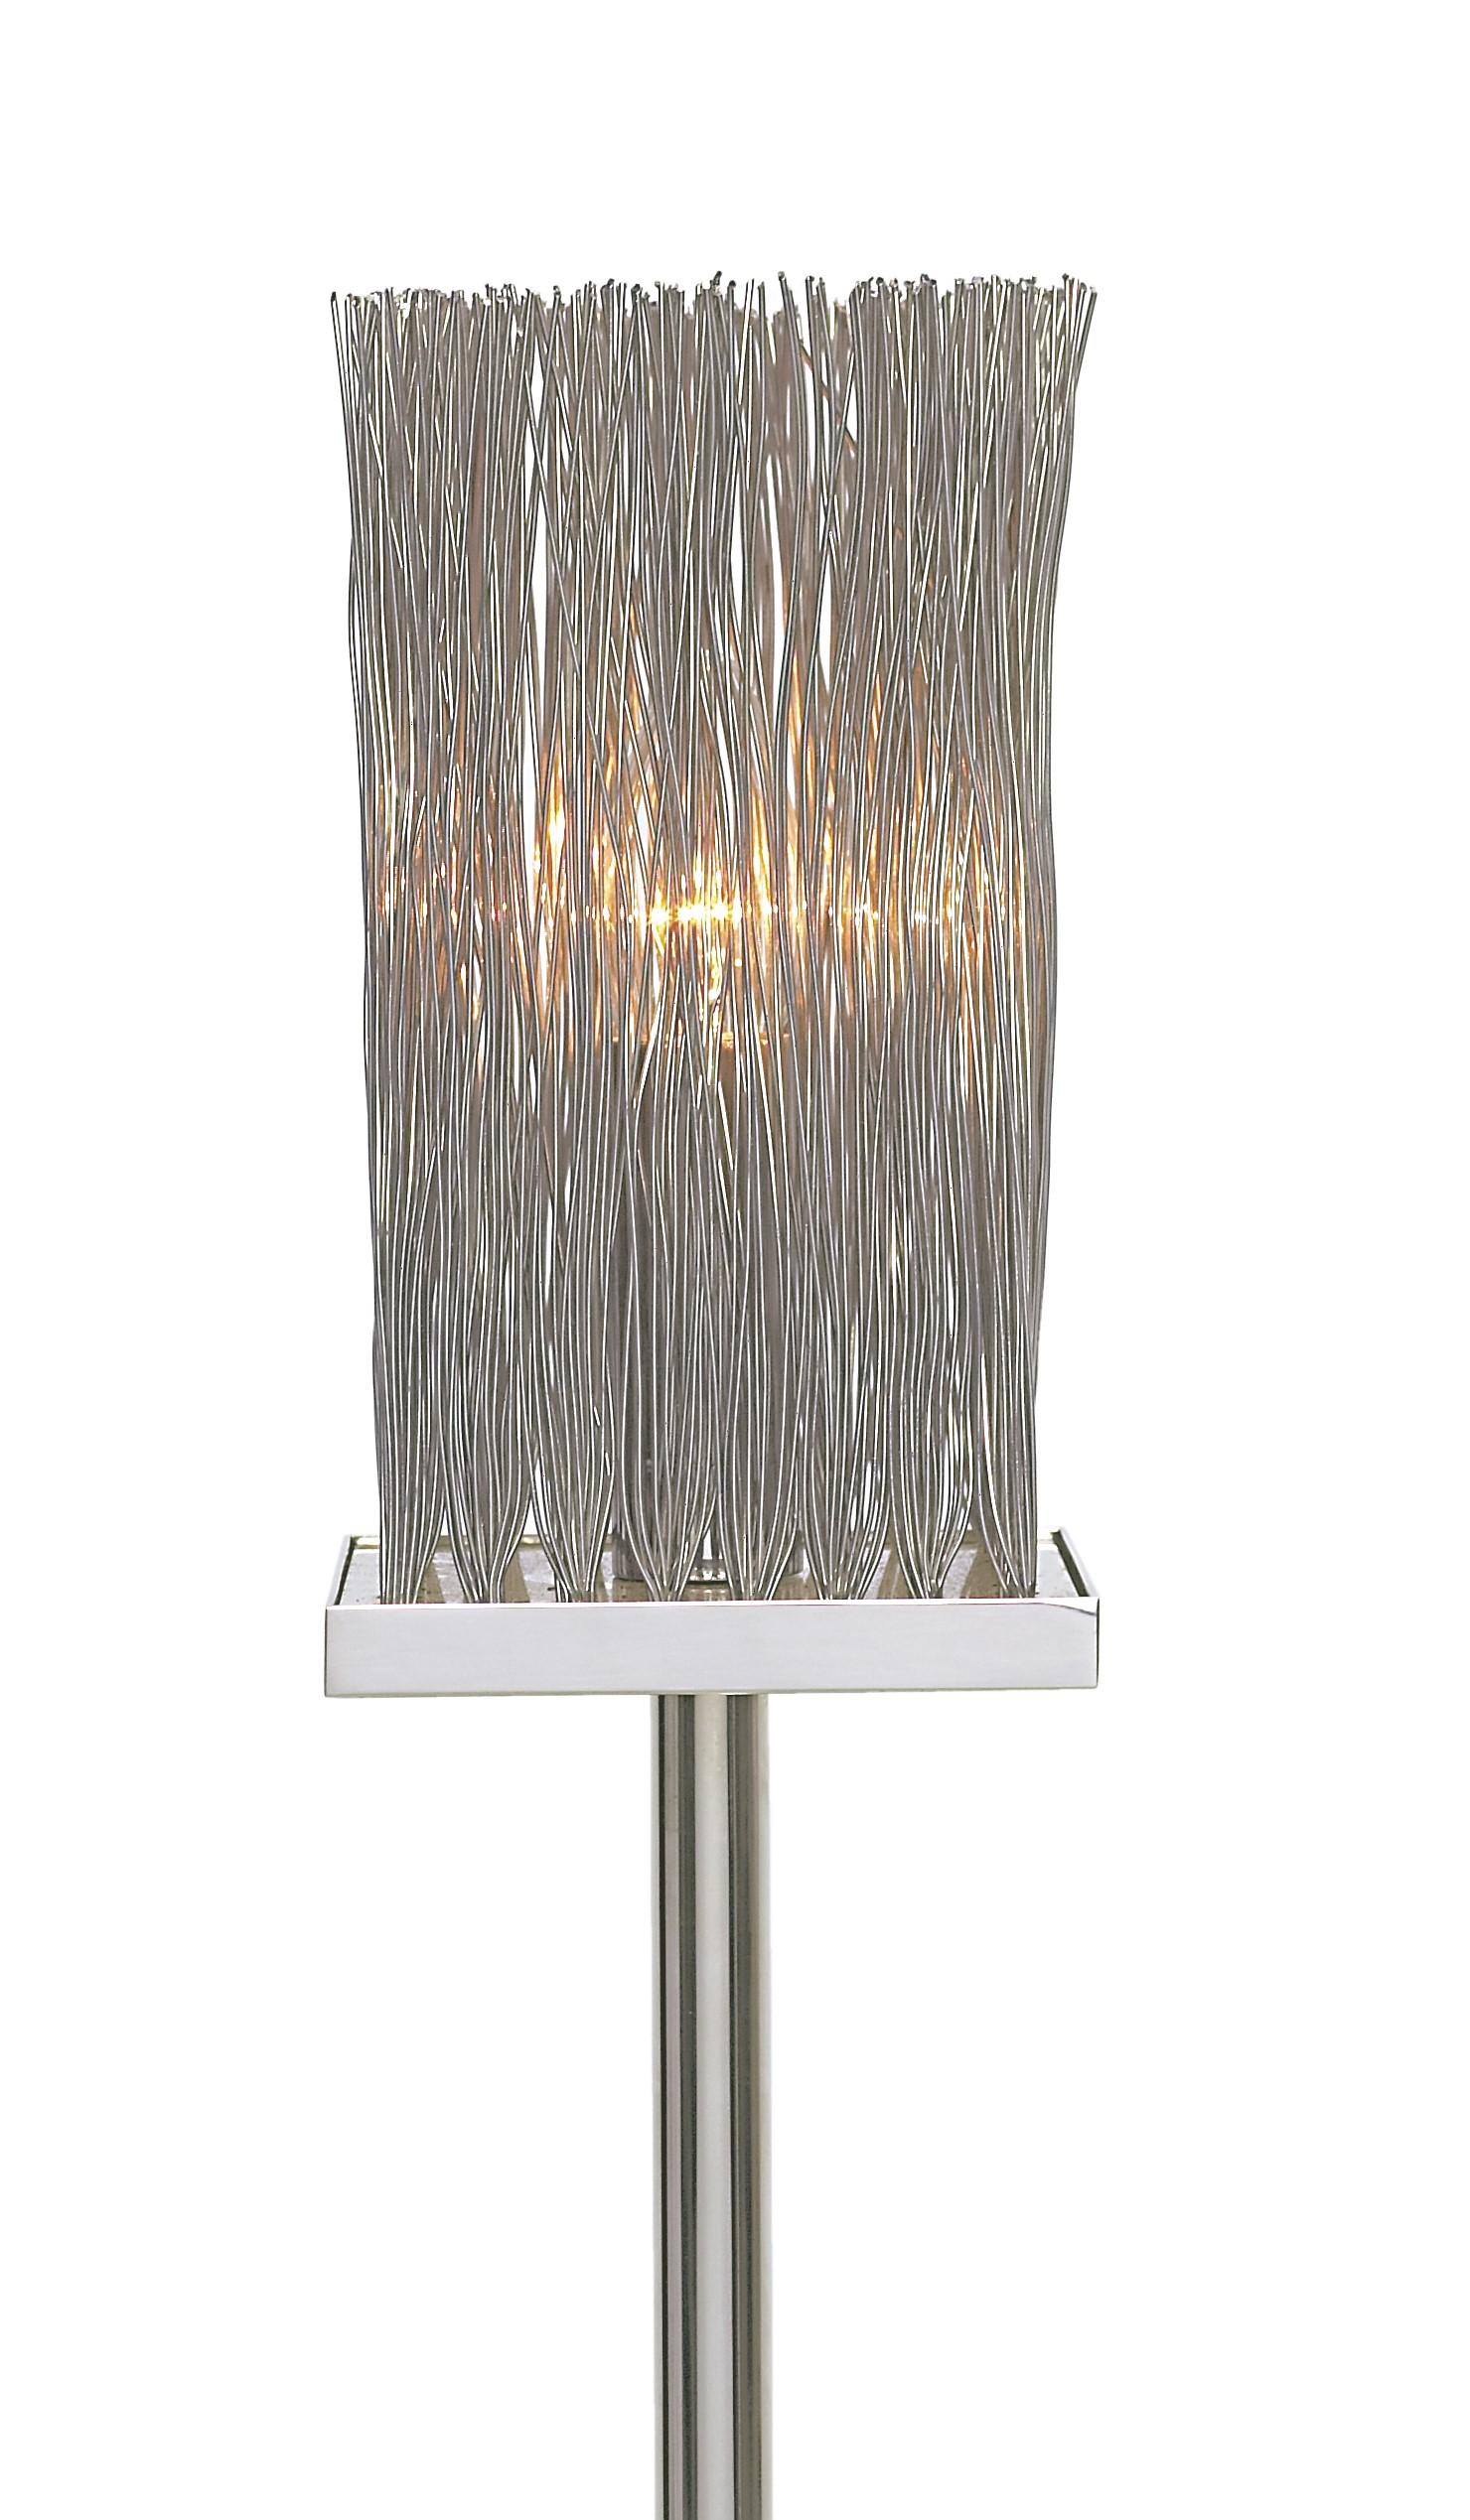 Grand lampadaire contemporain moderne italien en fil de fer chromé avec base chromée. la base chromée est une pièce chromée lourde qui fournit un poids pour la stabilité. Ce lampadaire chromé est doté d'un dessus câblé qui est attrayant et permet à